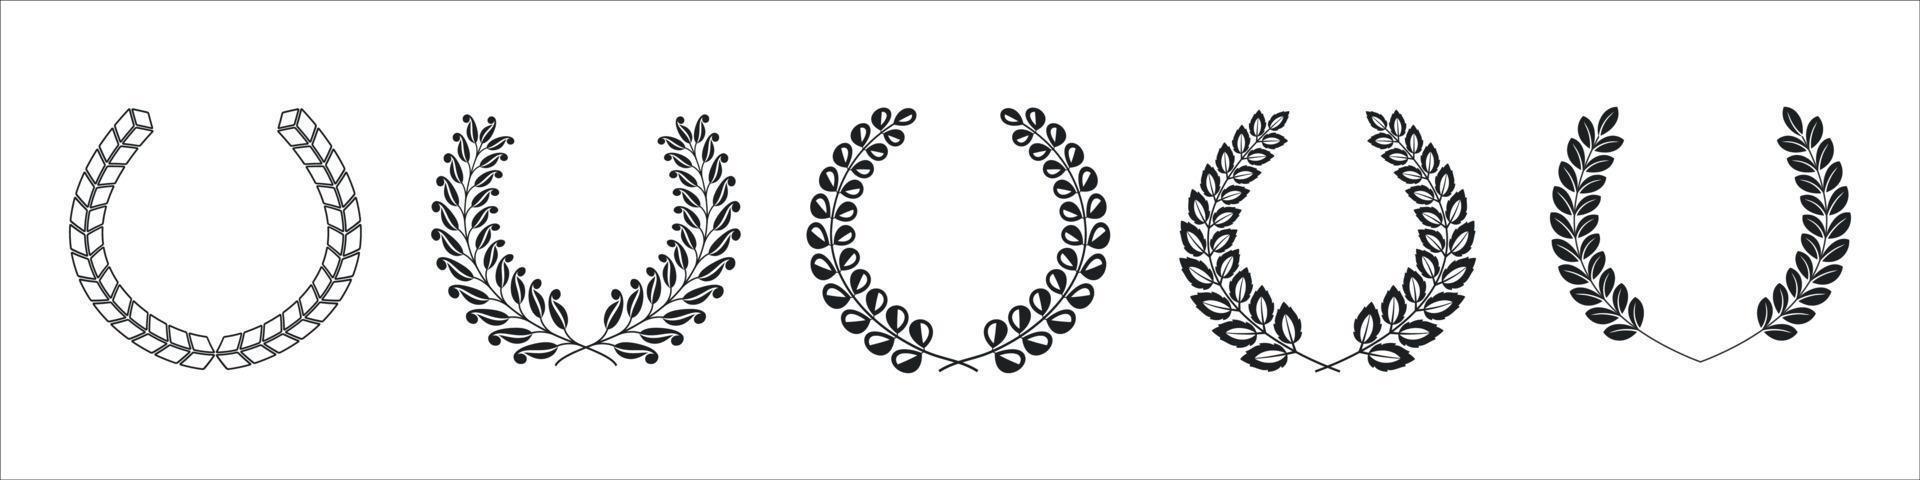 lauwerkransencollectie in heraldische stijl, slingers voor blazoenen, vector